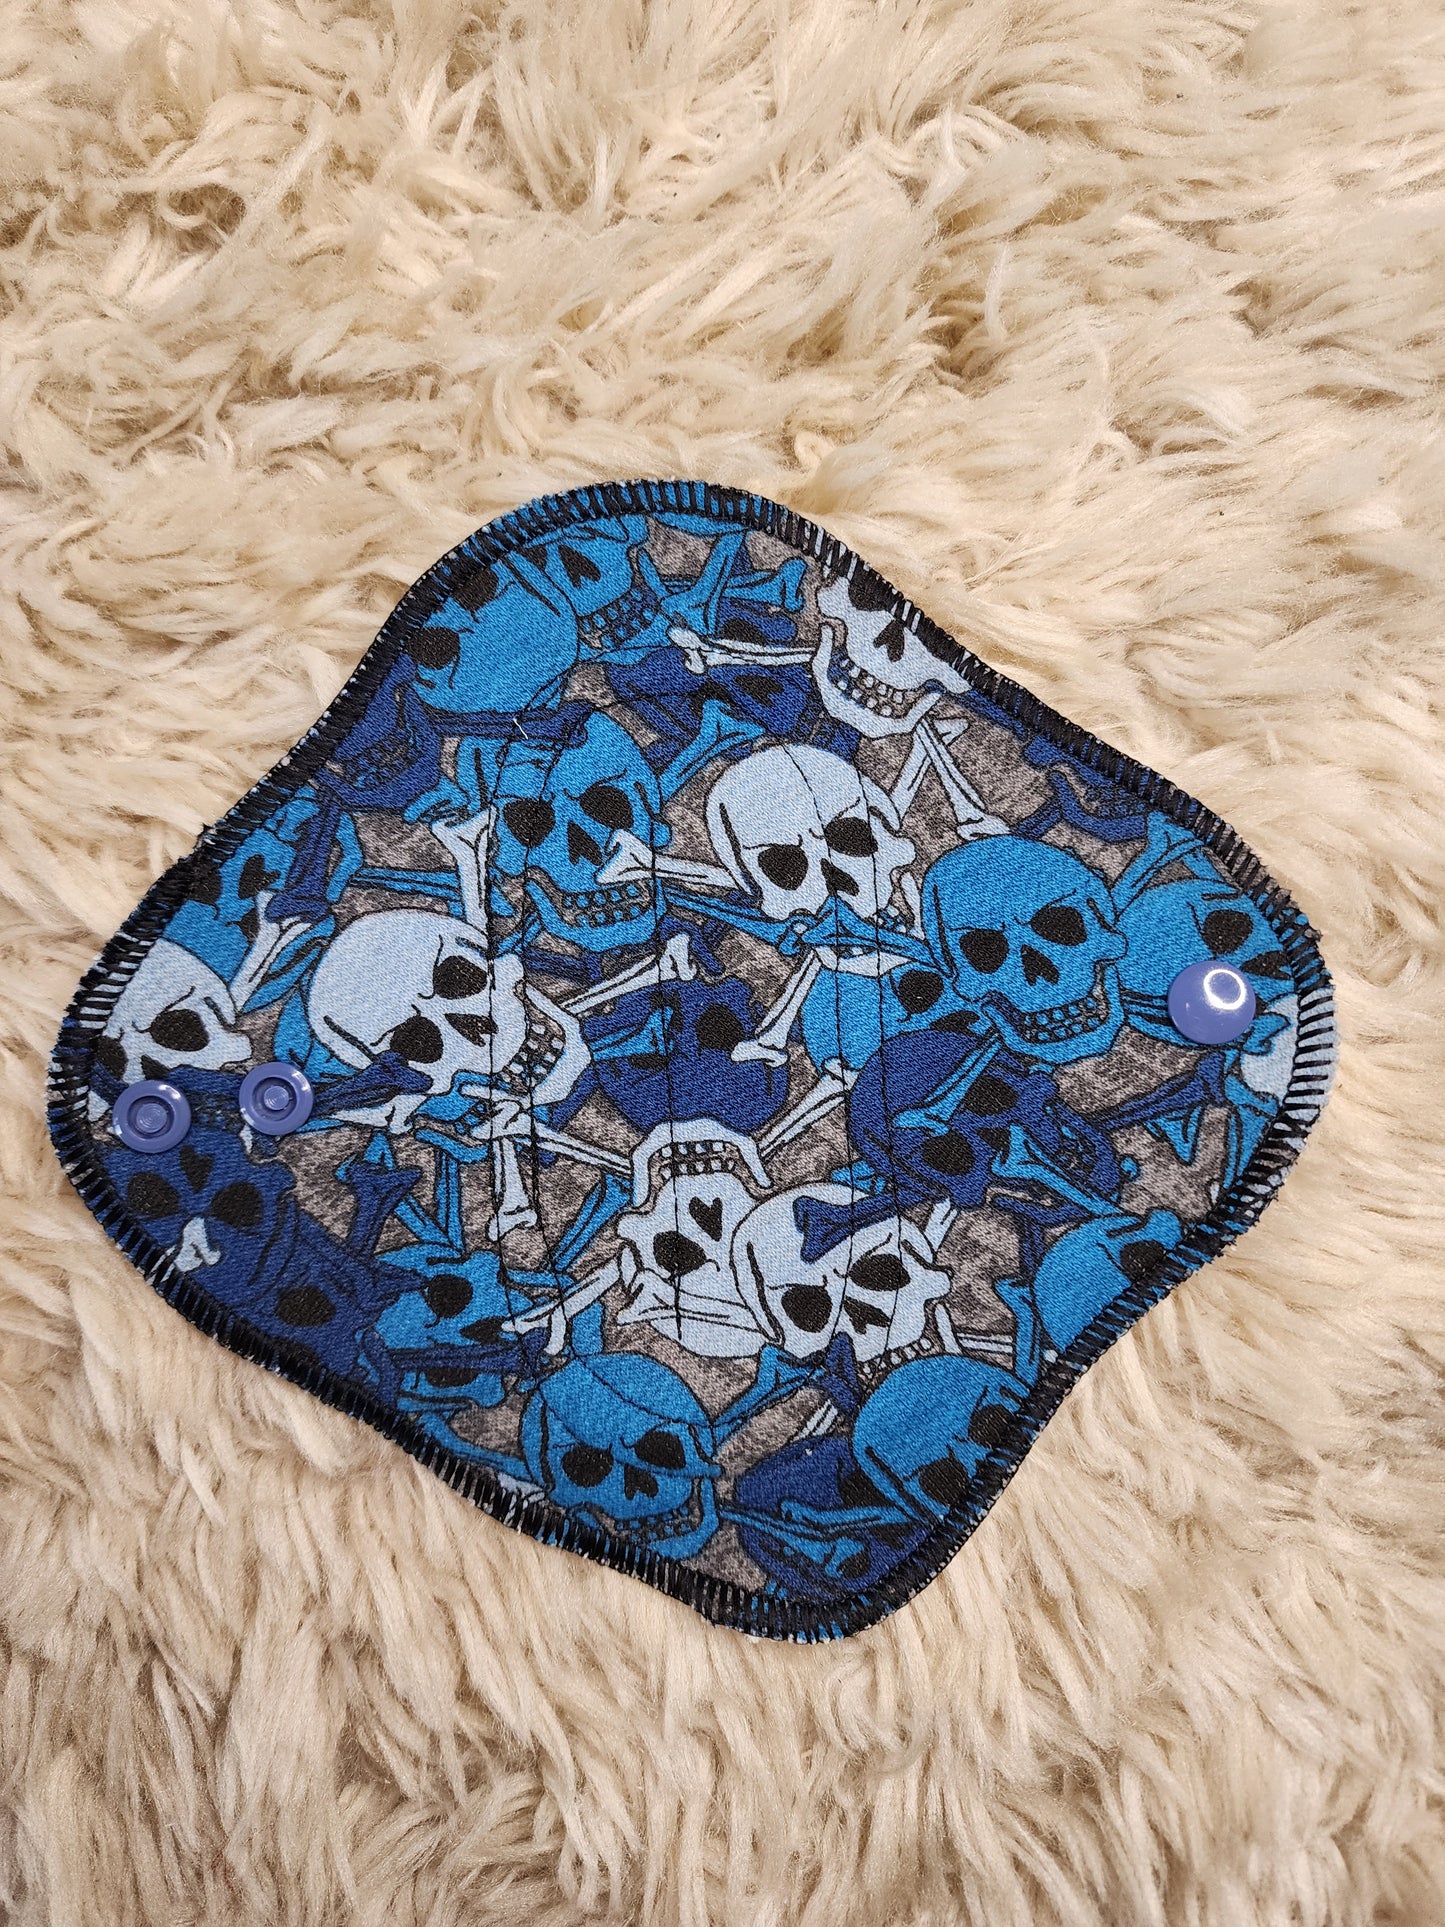 6" Blue skull cloth pad